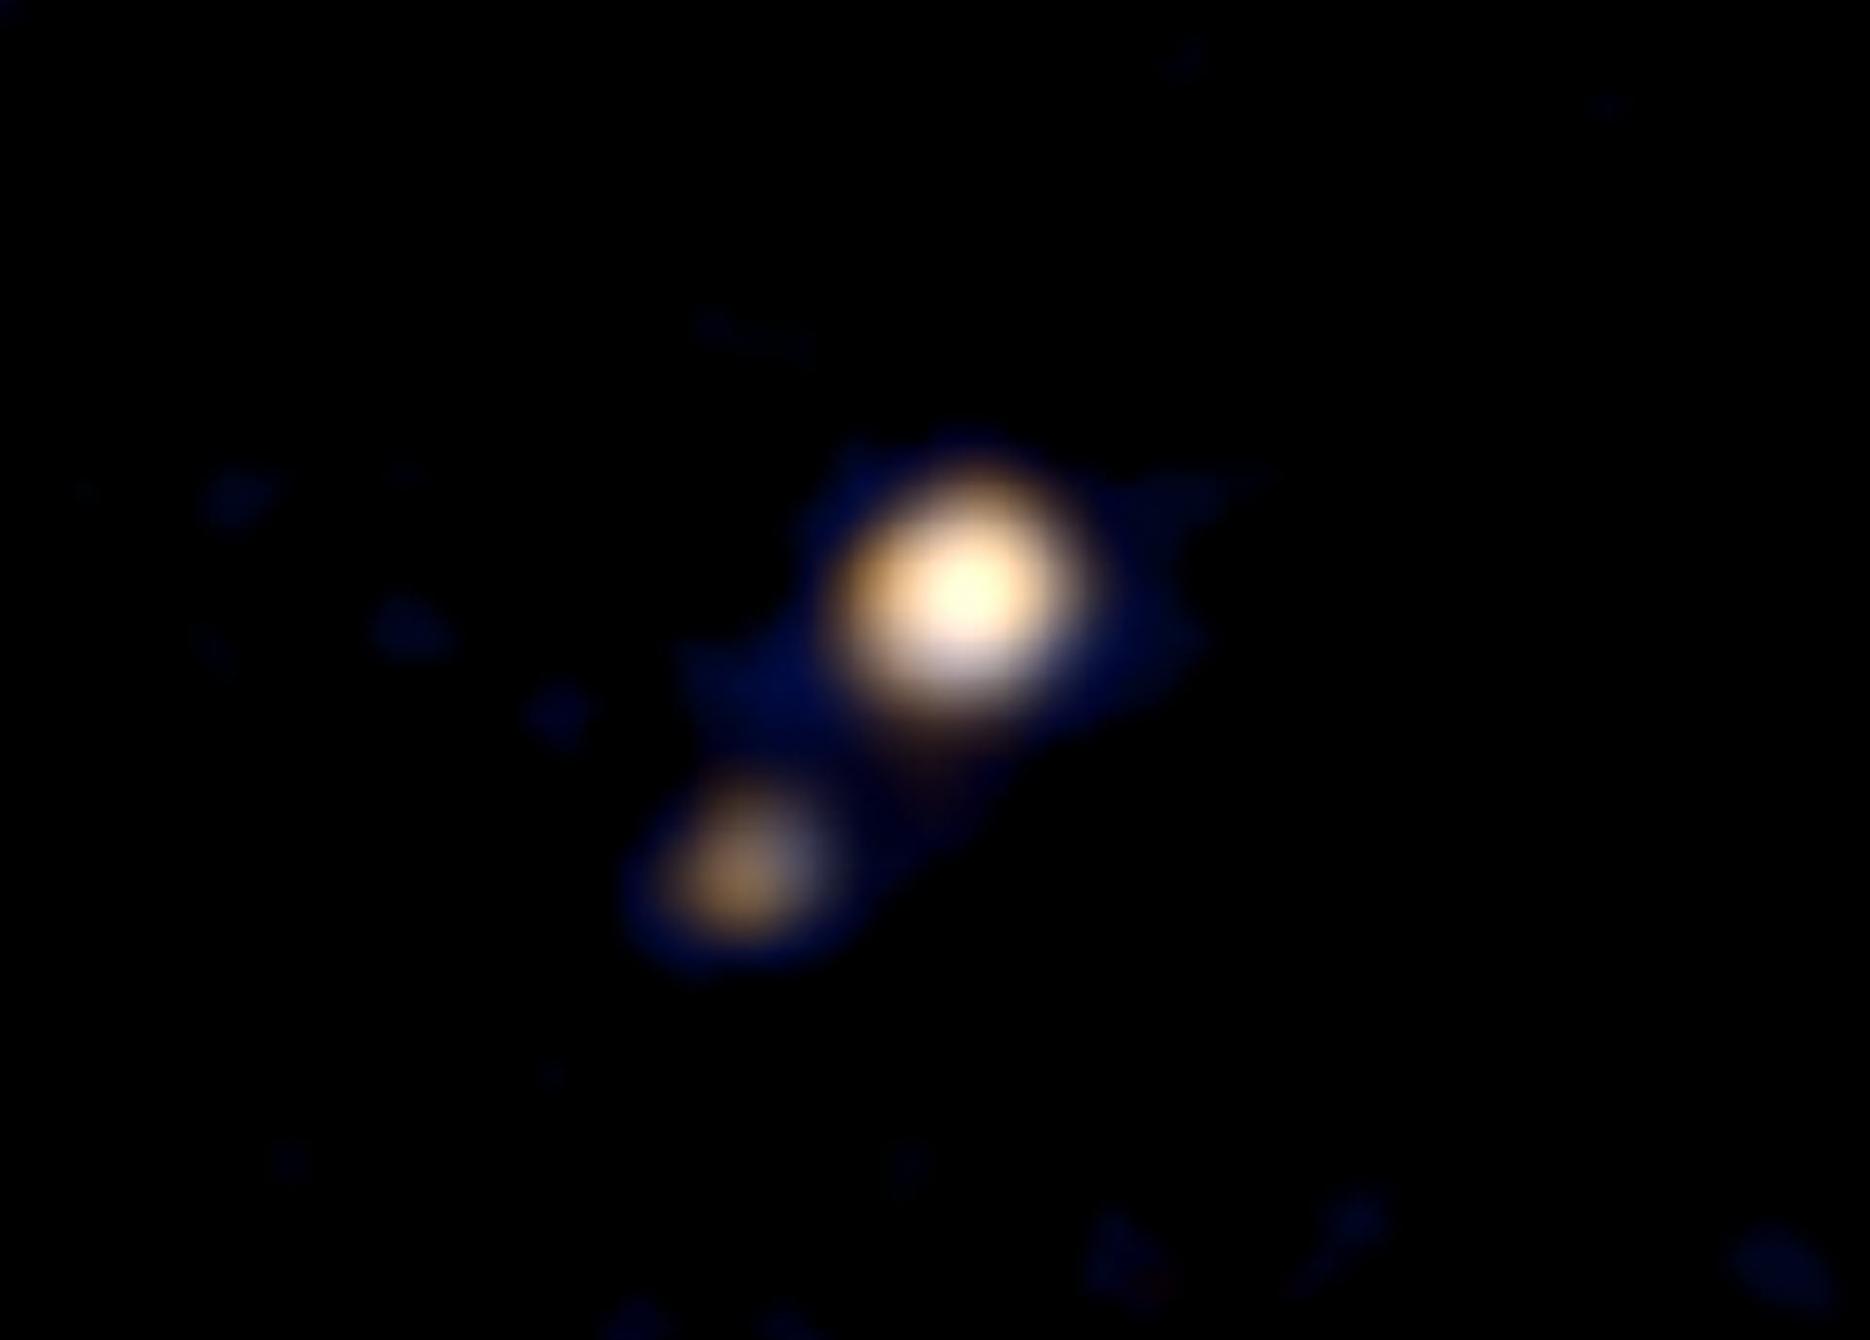 新视野号传回一张冥王星的彩色照片 NASA预计7月可以拍到冥王星表面照片